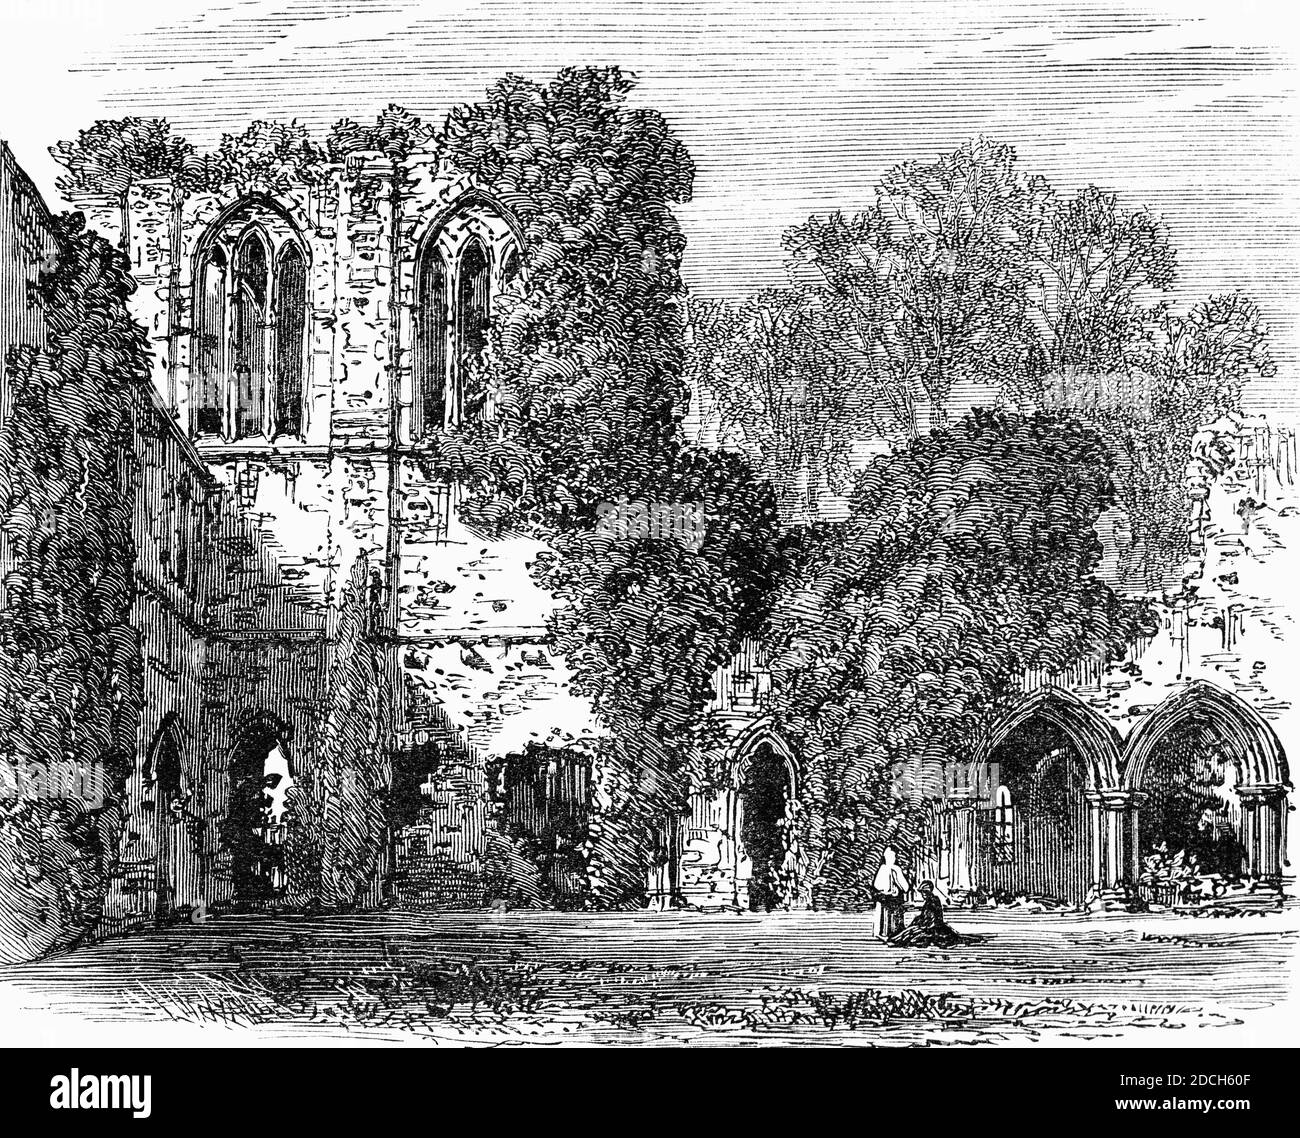 Vue du XIXe siècle sur l'abbaye de Netley, un monastère médiéval en ruines dans le village de Netley, près de Southampton, dans le Hampshire, en Angleterre. L'abbaye a été fondée en 1239 comme une maison pour les moines de l'ordre cistercien austère, mais malgré le patronage royal, Netley n'a jamais été riche, n'a produit aucun érudit influent ni churmen, et son histoire de près de 300 ans était calme. Banque D'Images